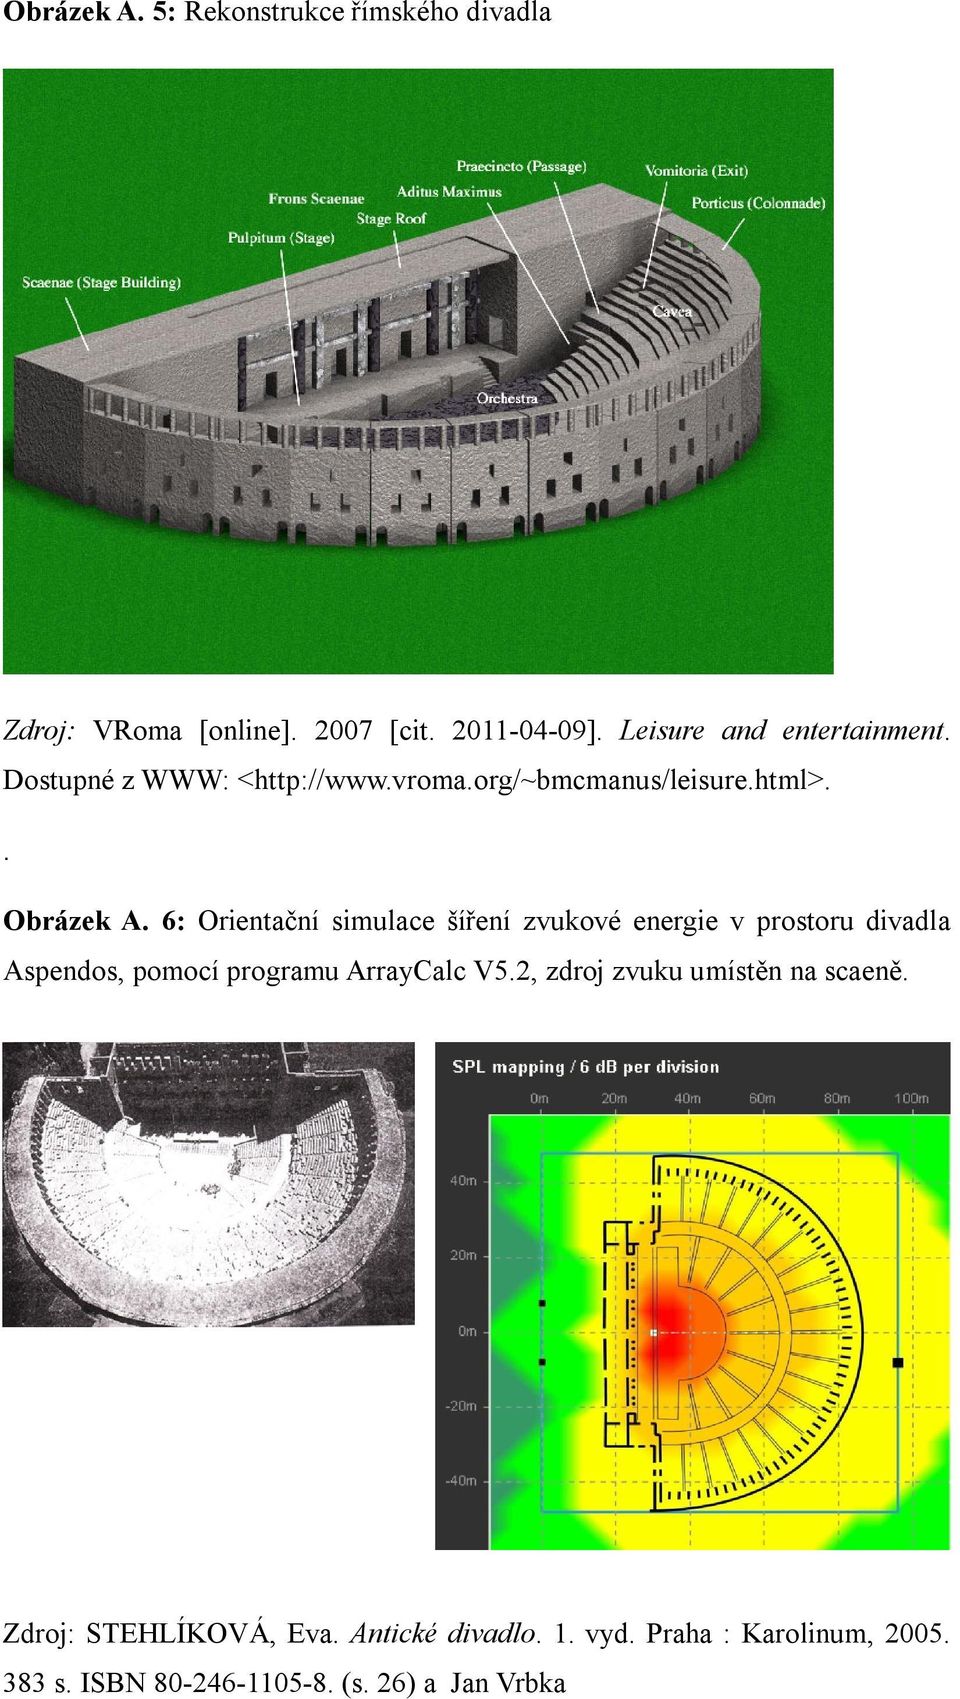 6: Orientační simulace šíření zvukové energie v prostoru divadla Aspendos, pomocí programu ArrayCalc V5.